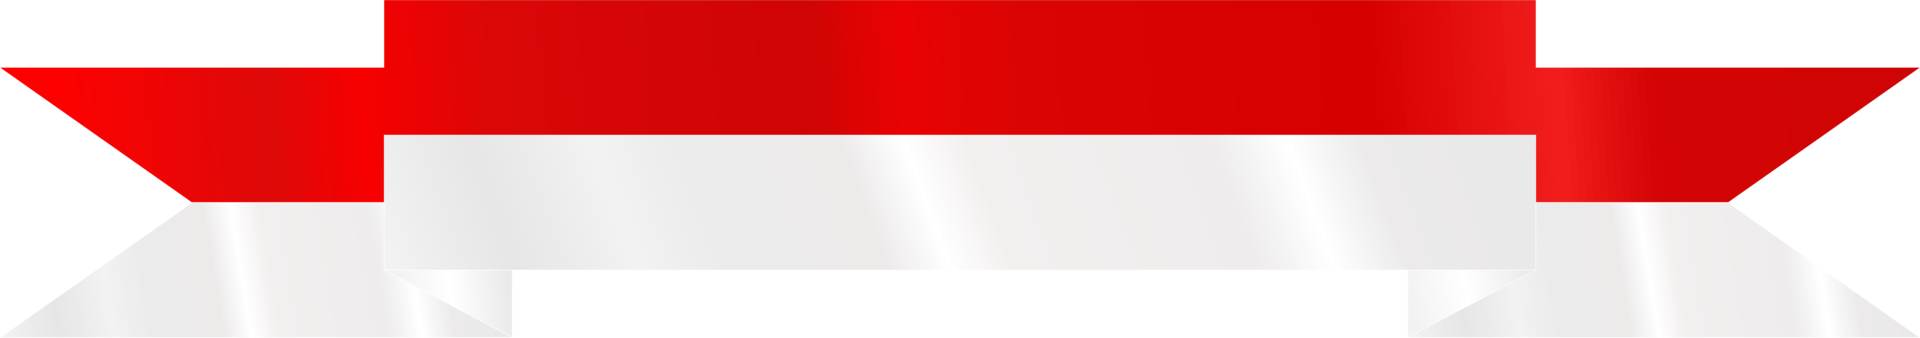 Indonesia bandera cinta, indonesio bandera cinta rojo blanco transparente antecedentes png